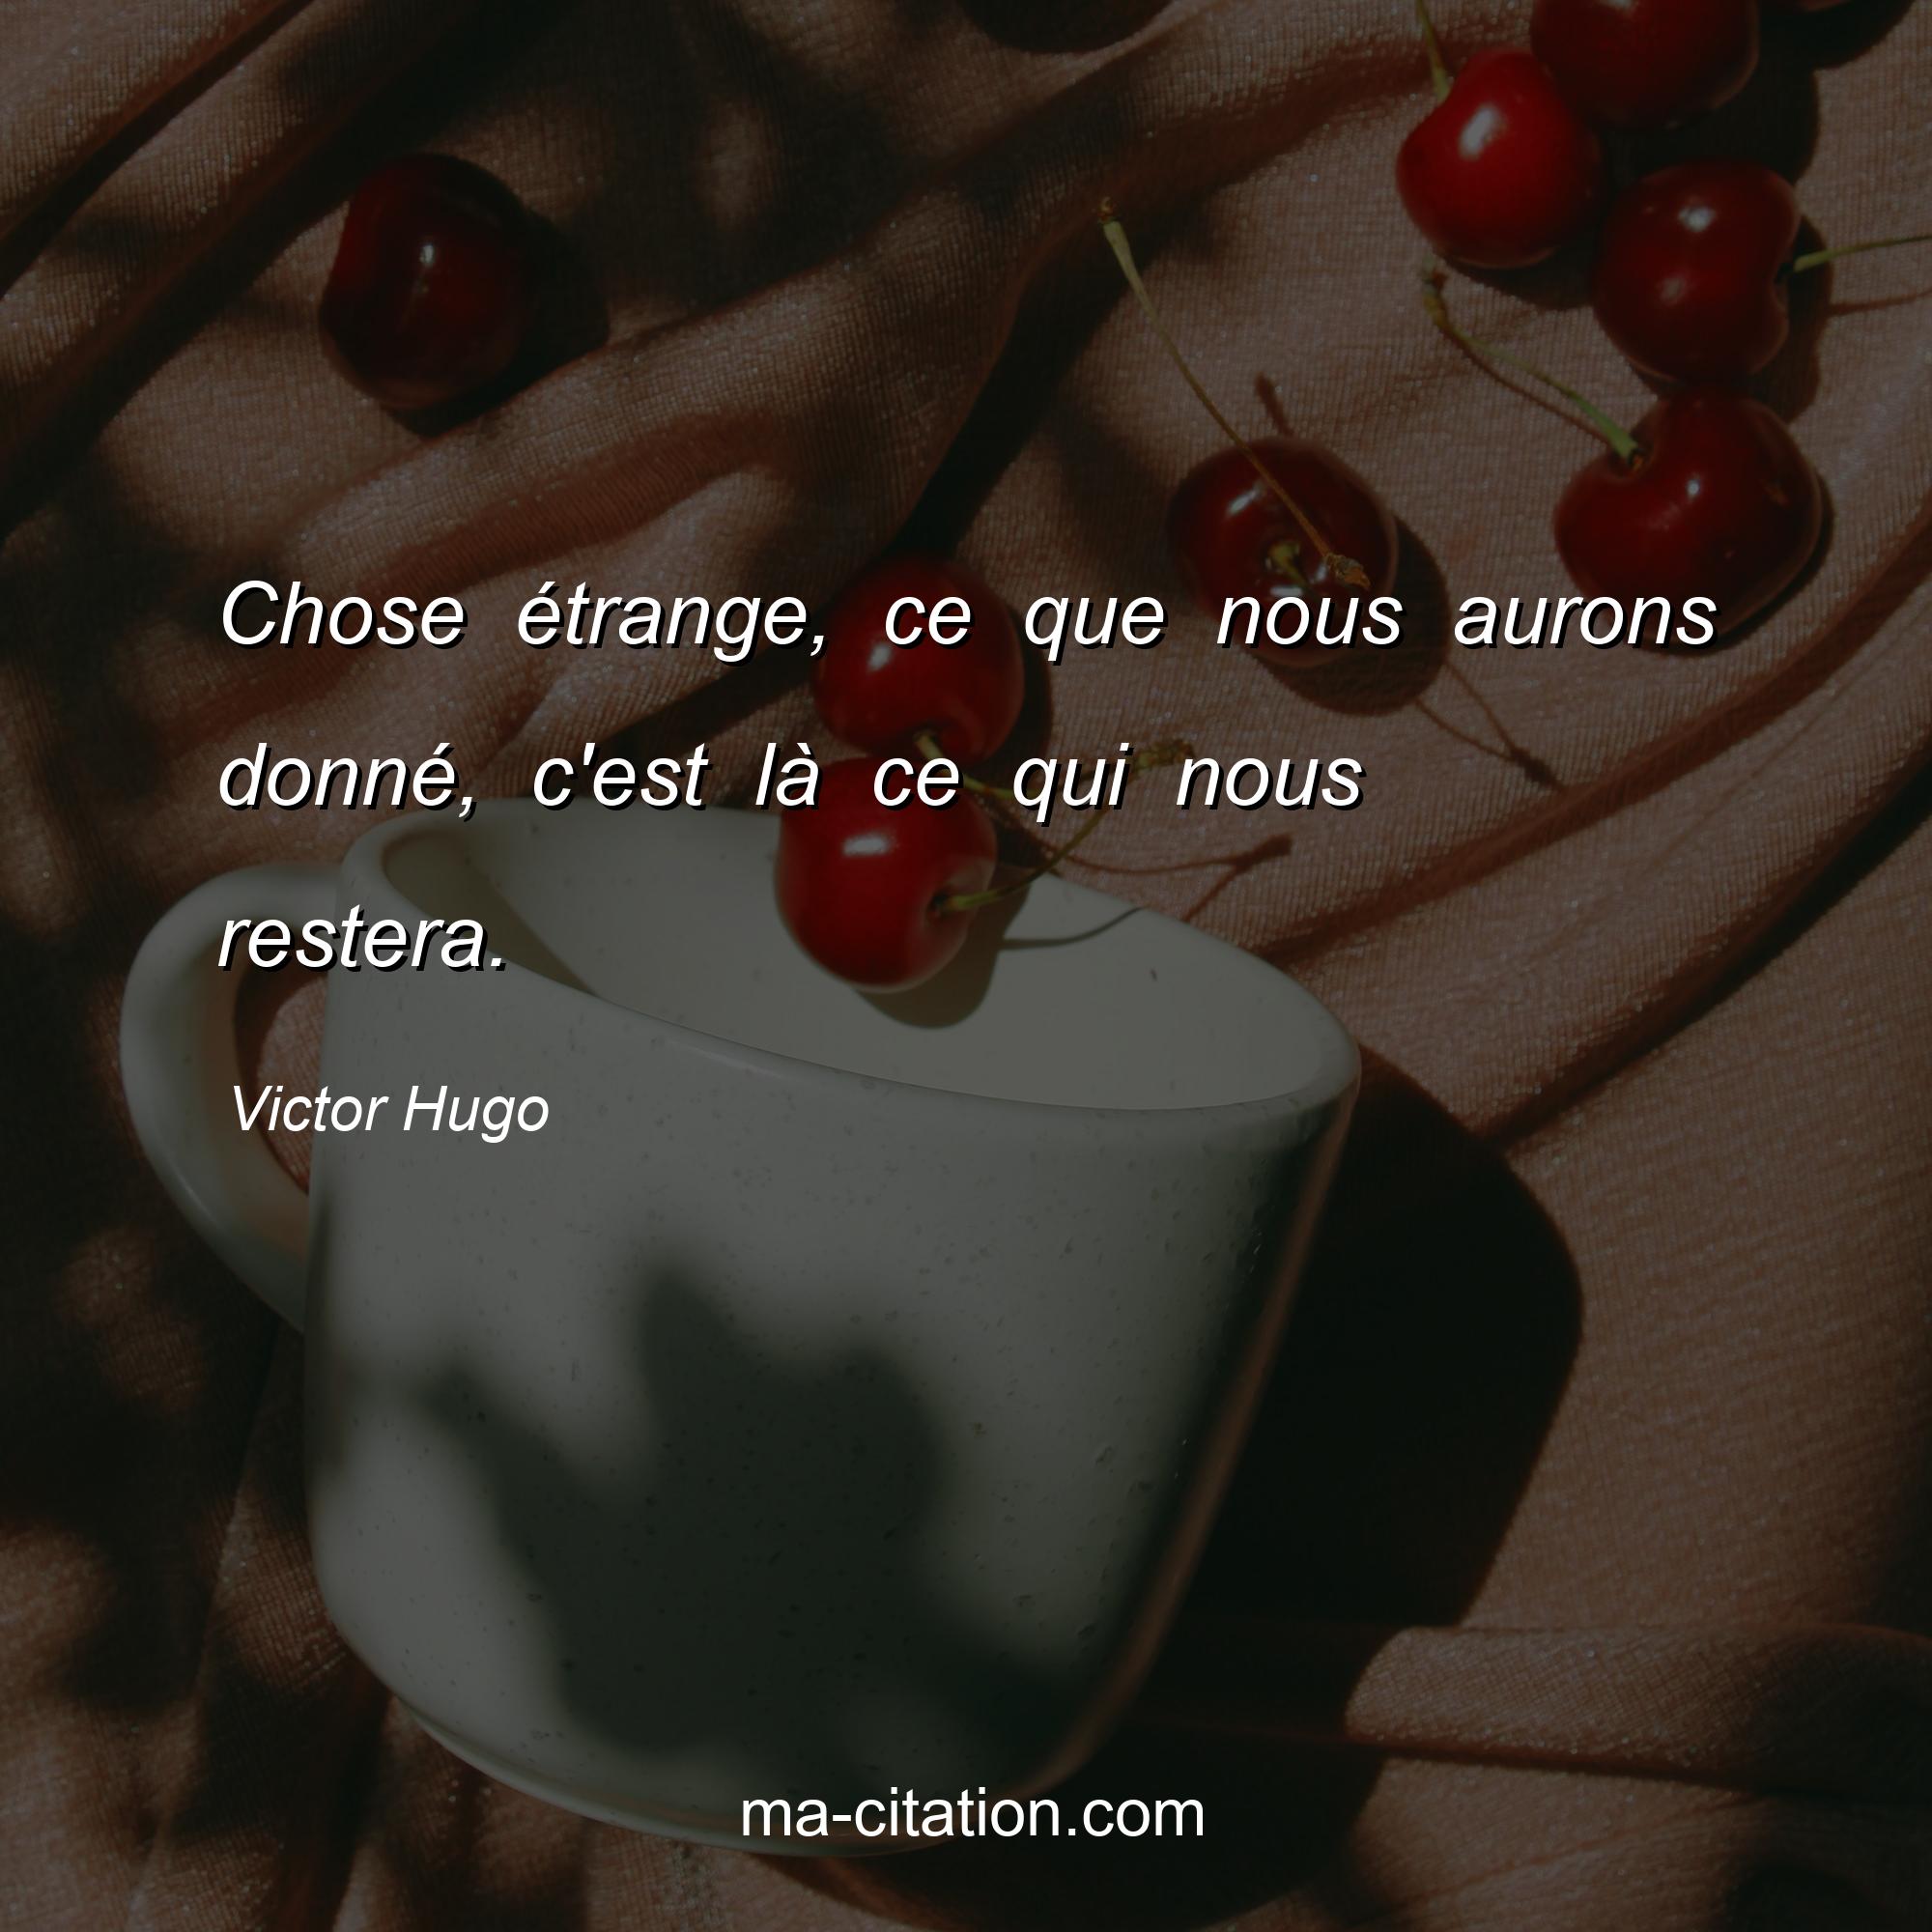 Victor Hugo : Chose étrange, ce que nous aurons donné, c'est là ce qui nous restera.